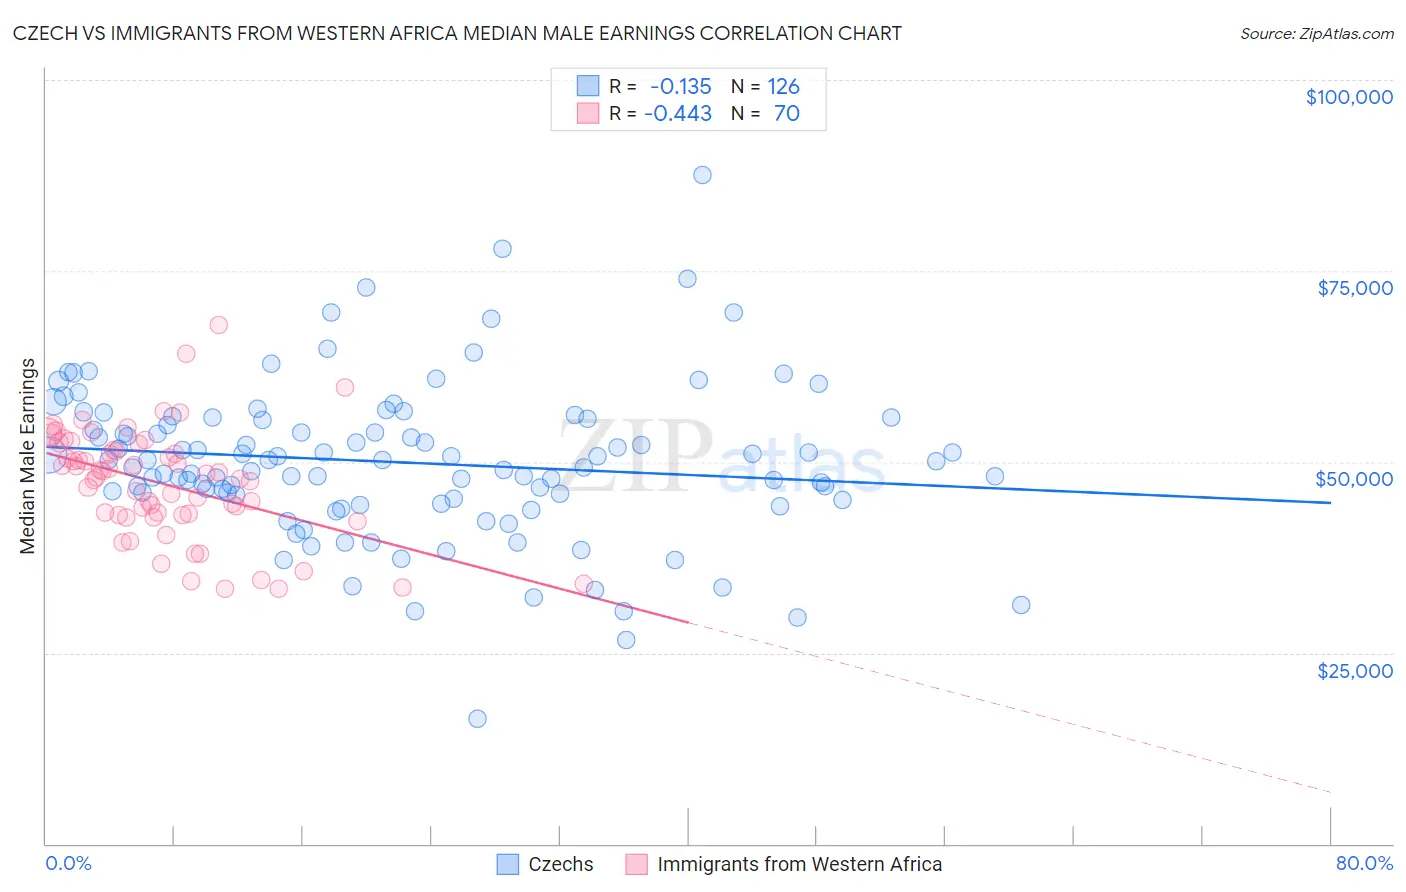 Czech vs Immigrants from Western Africa Median Male Earnings